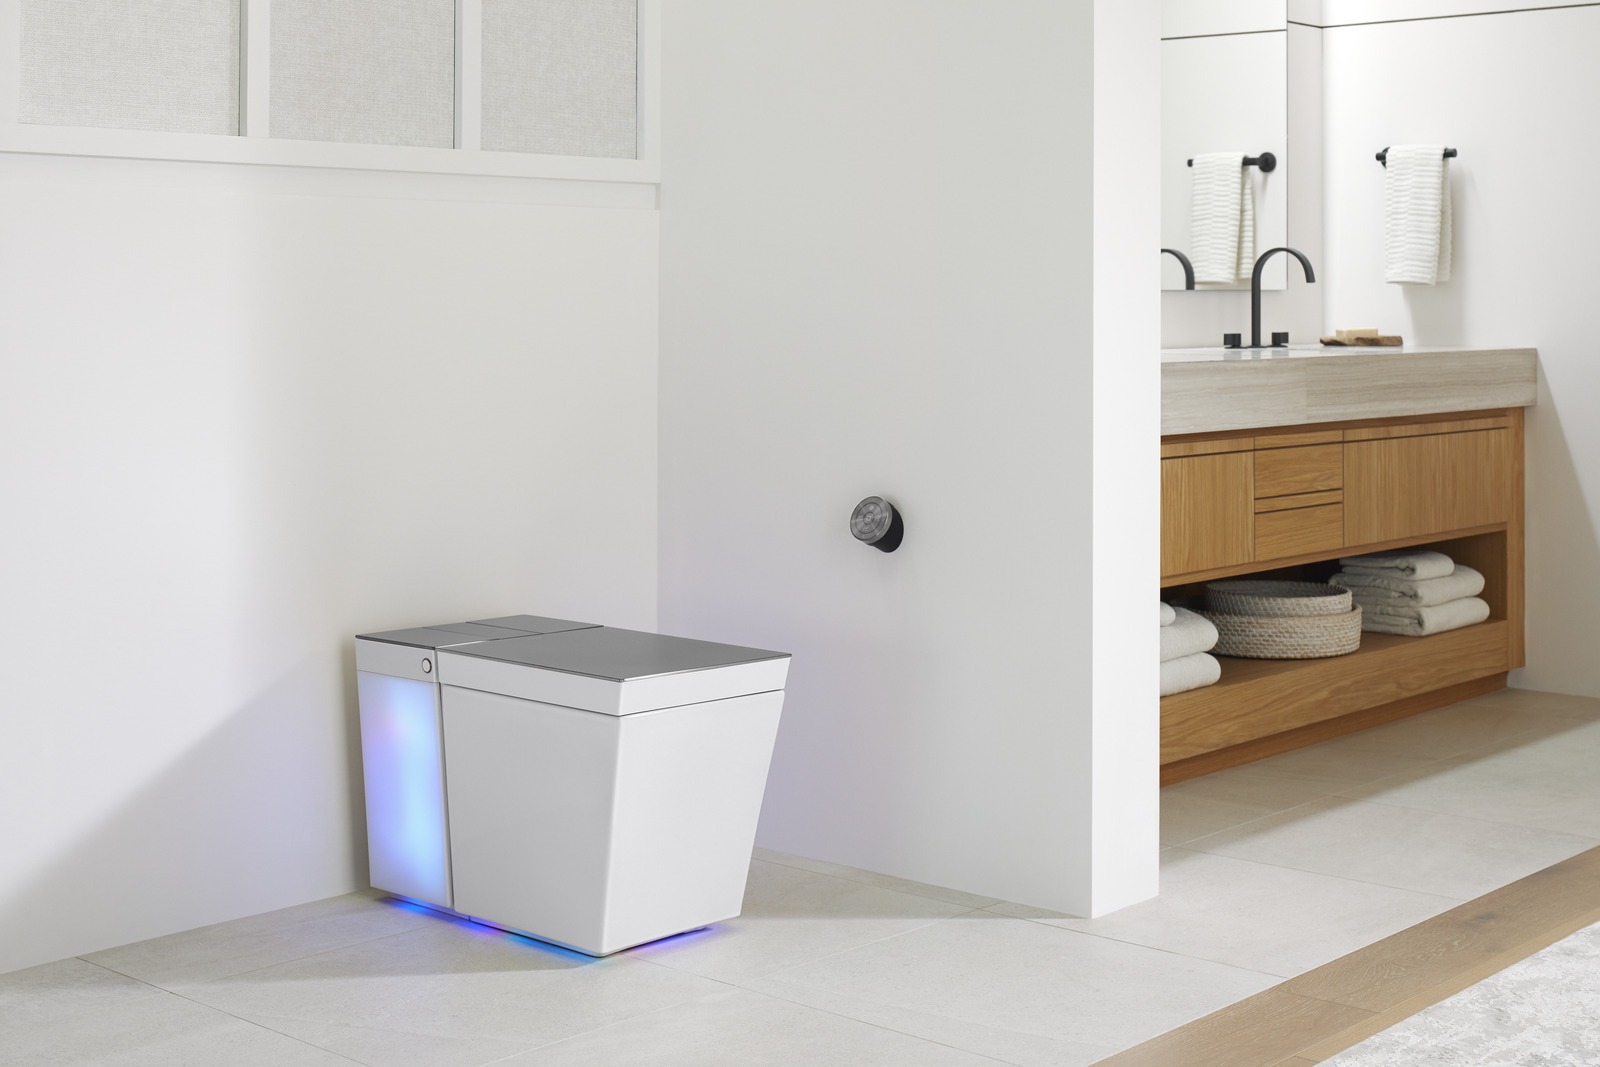 Best smart home bathroom gadgets